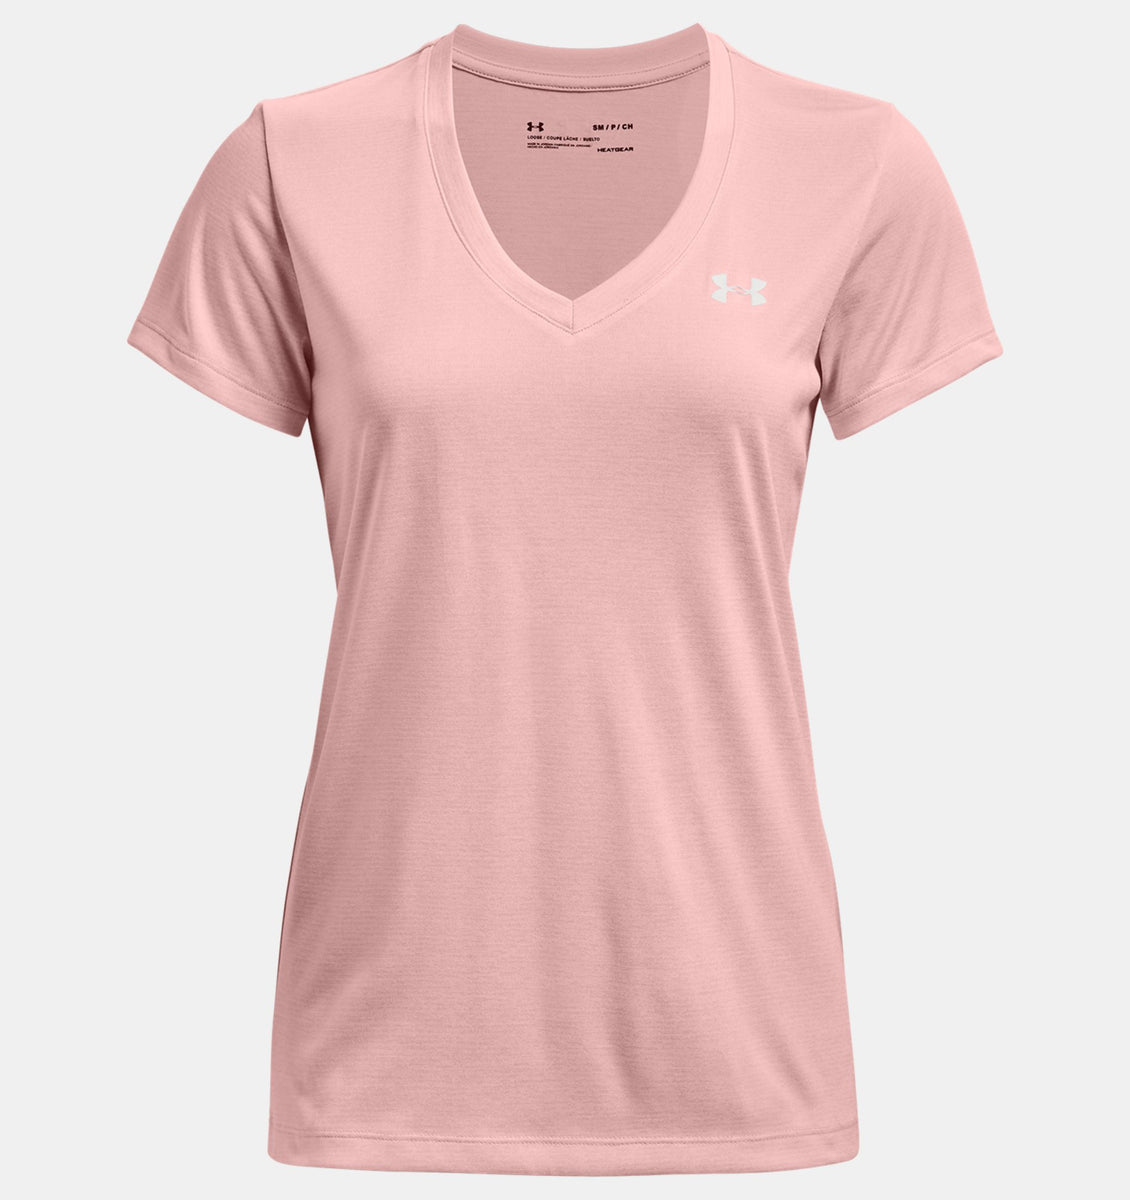 Under Armour Women's Tech V-Neck T-Shirt - Pink